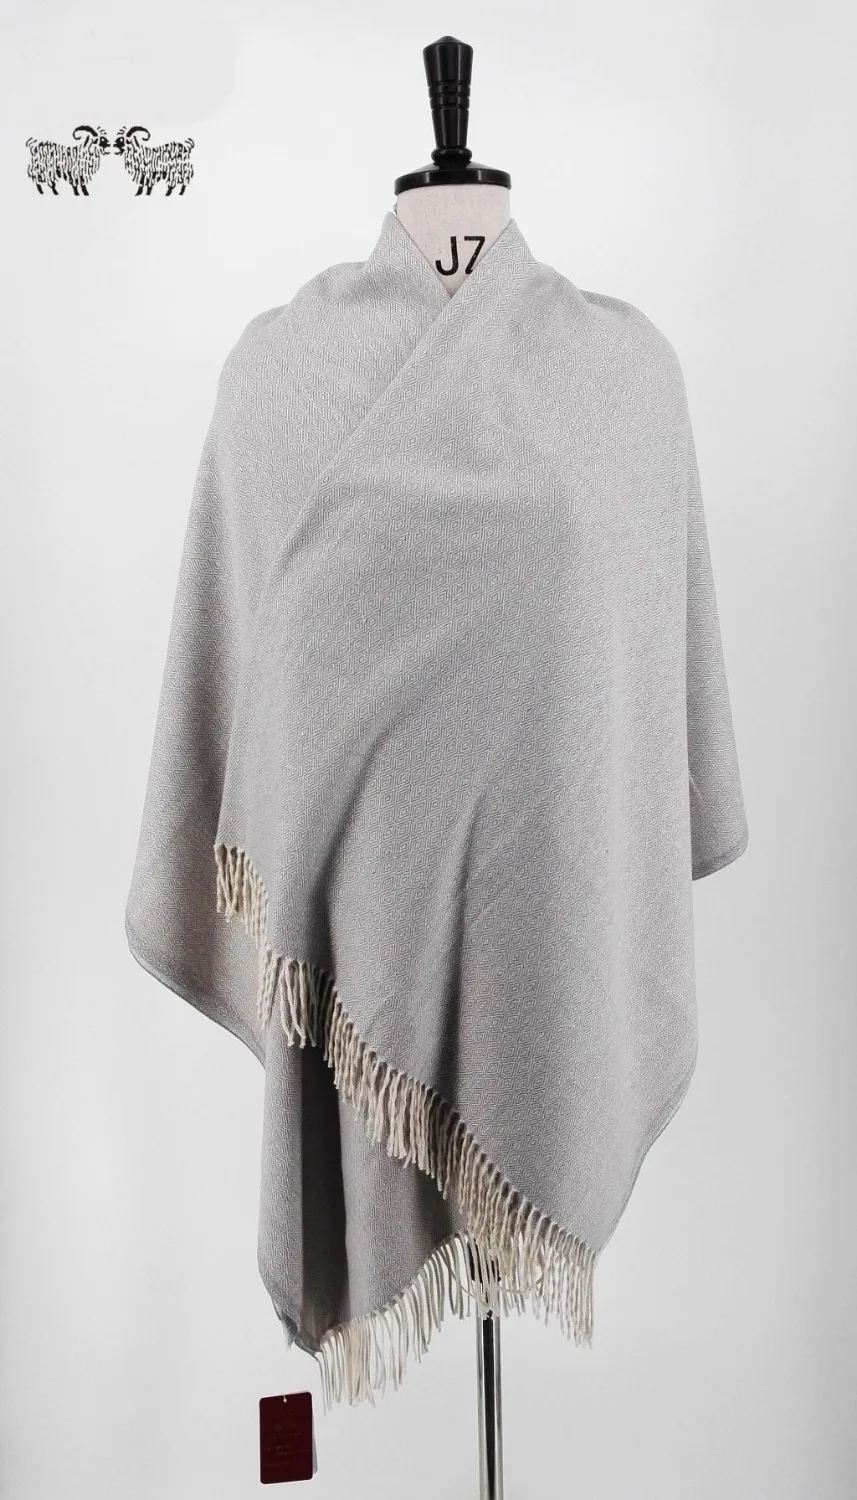 Детское одеяло из альпаки- Высококачественное детское шерстяное одеяло из альпаки серого цвета, идеальный подарок для любого возраста или случая